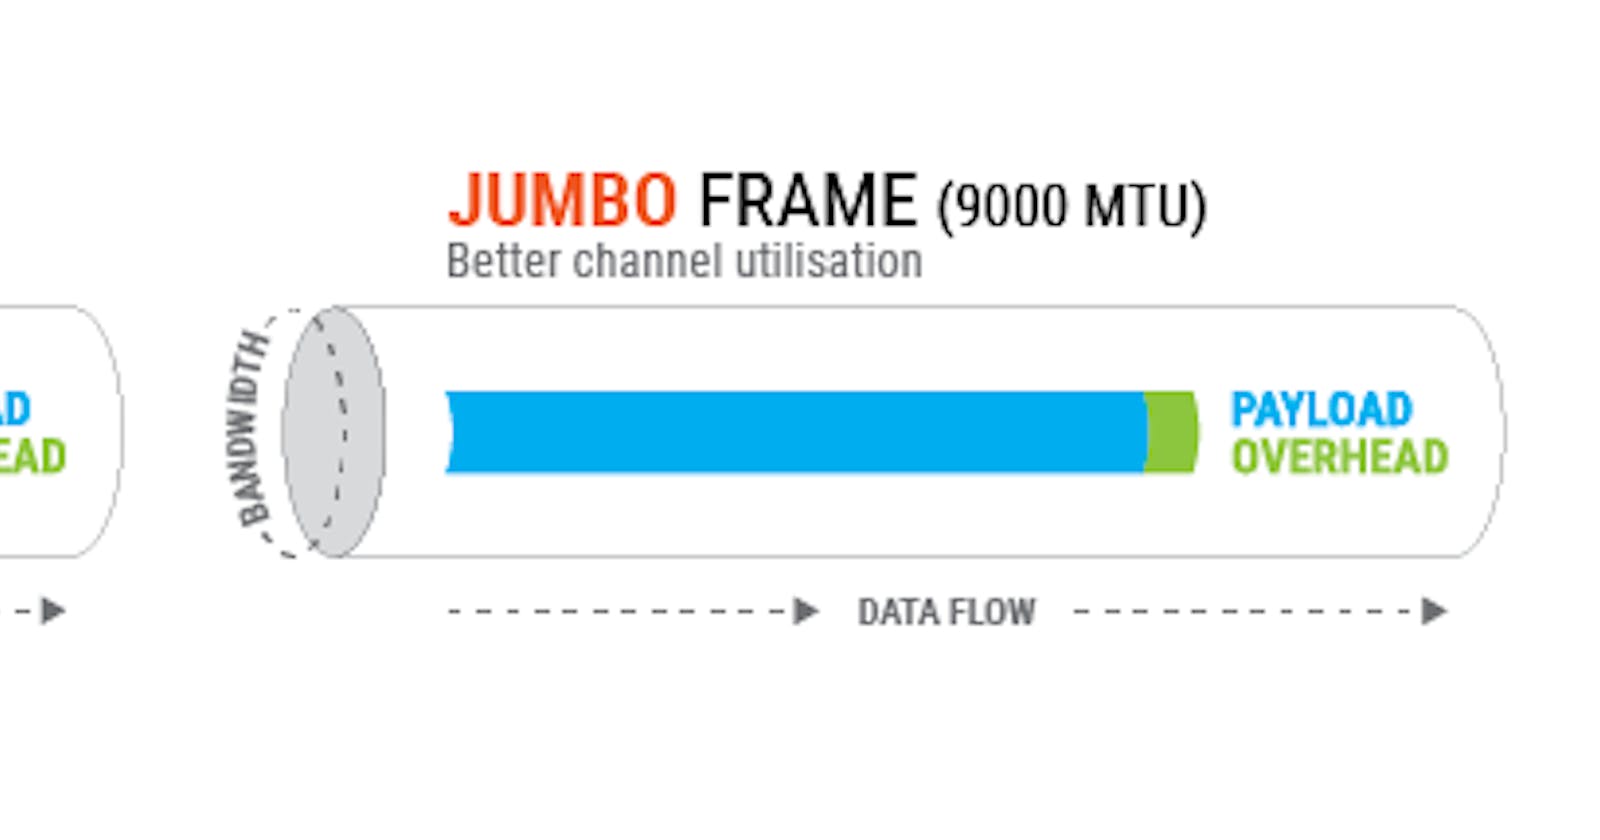 O que são Jumbo Frames, para que servem, quando usar e quando não usar?